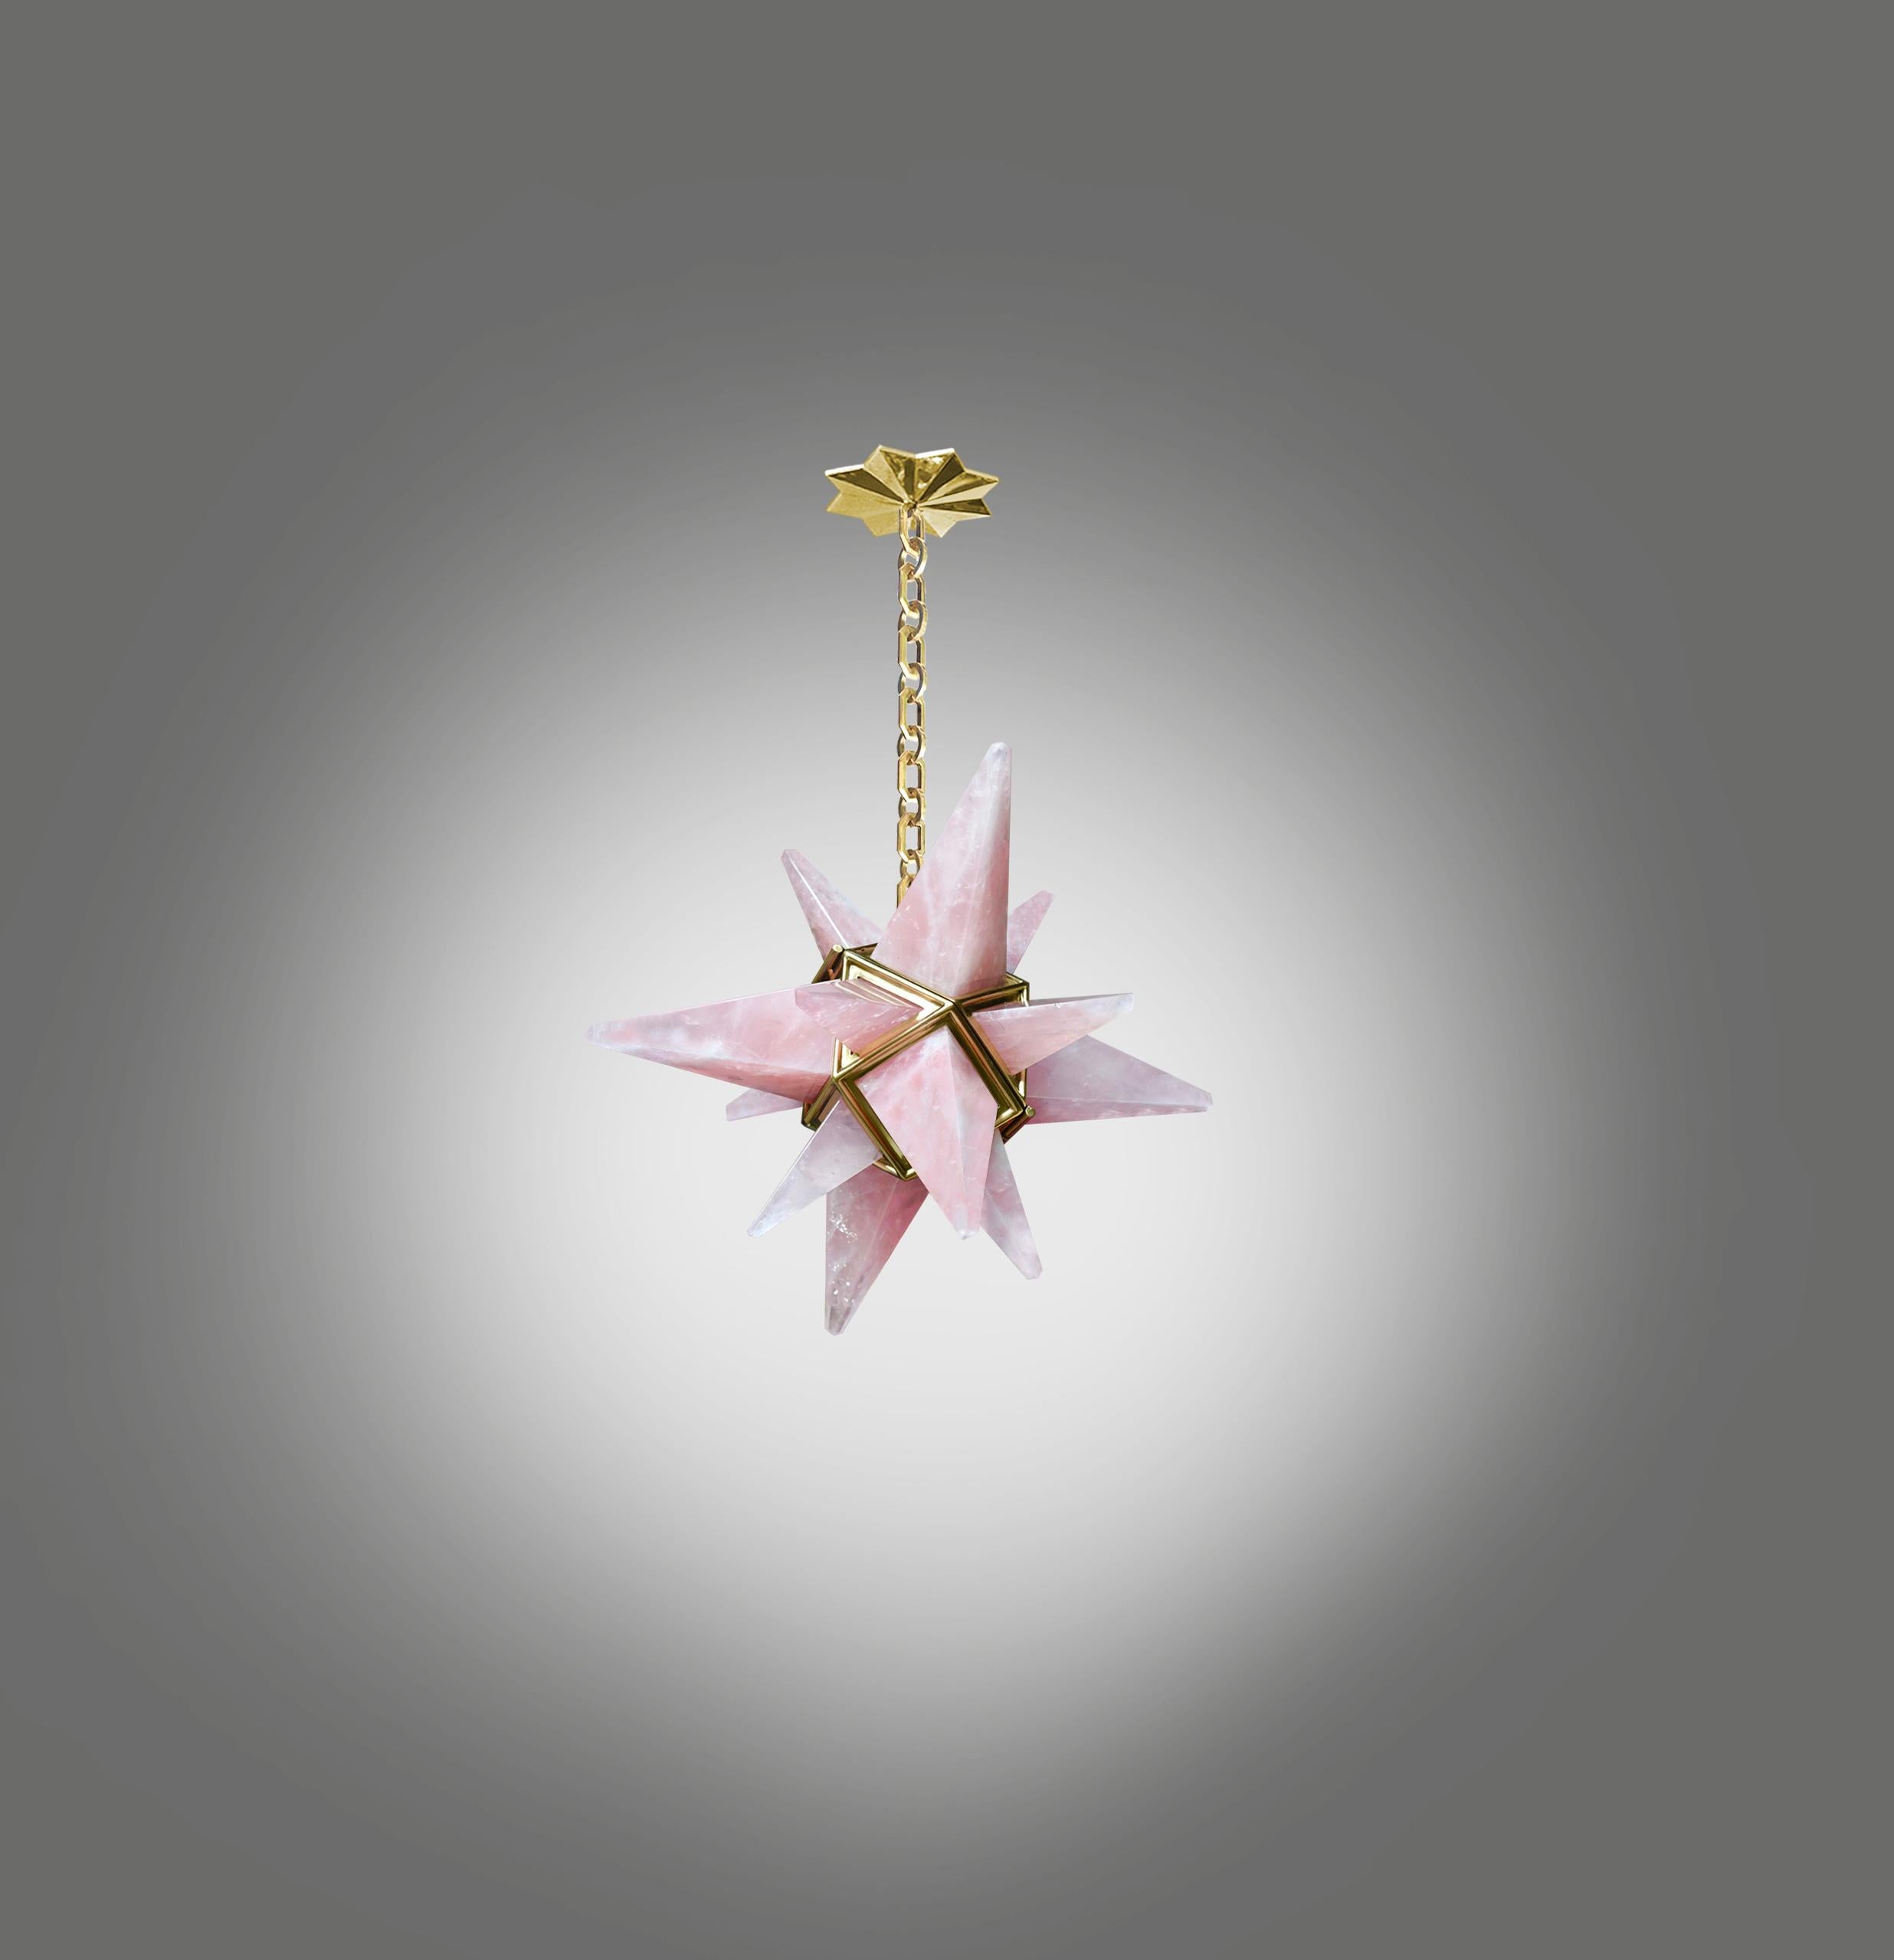 Lustre en cristal de roche rose de style déco en forme d'étoile avec cadre en laiton poli. Créé par Phoenix Gallery, NYC.
Une prise installée. Utiliser une lampe candélabre LED de 75 watts.
Ampoule fournie.
La hauteur est réglable.